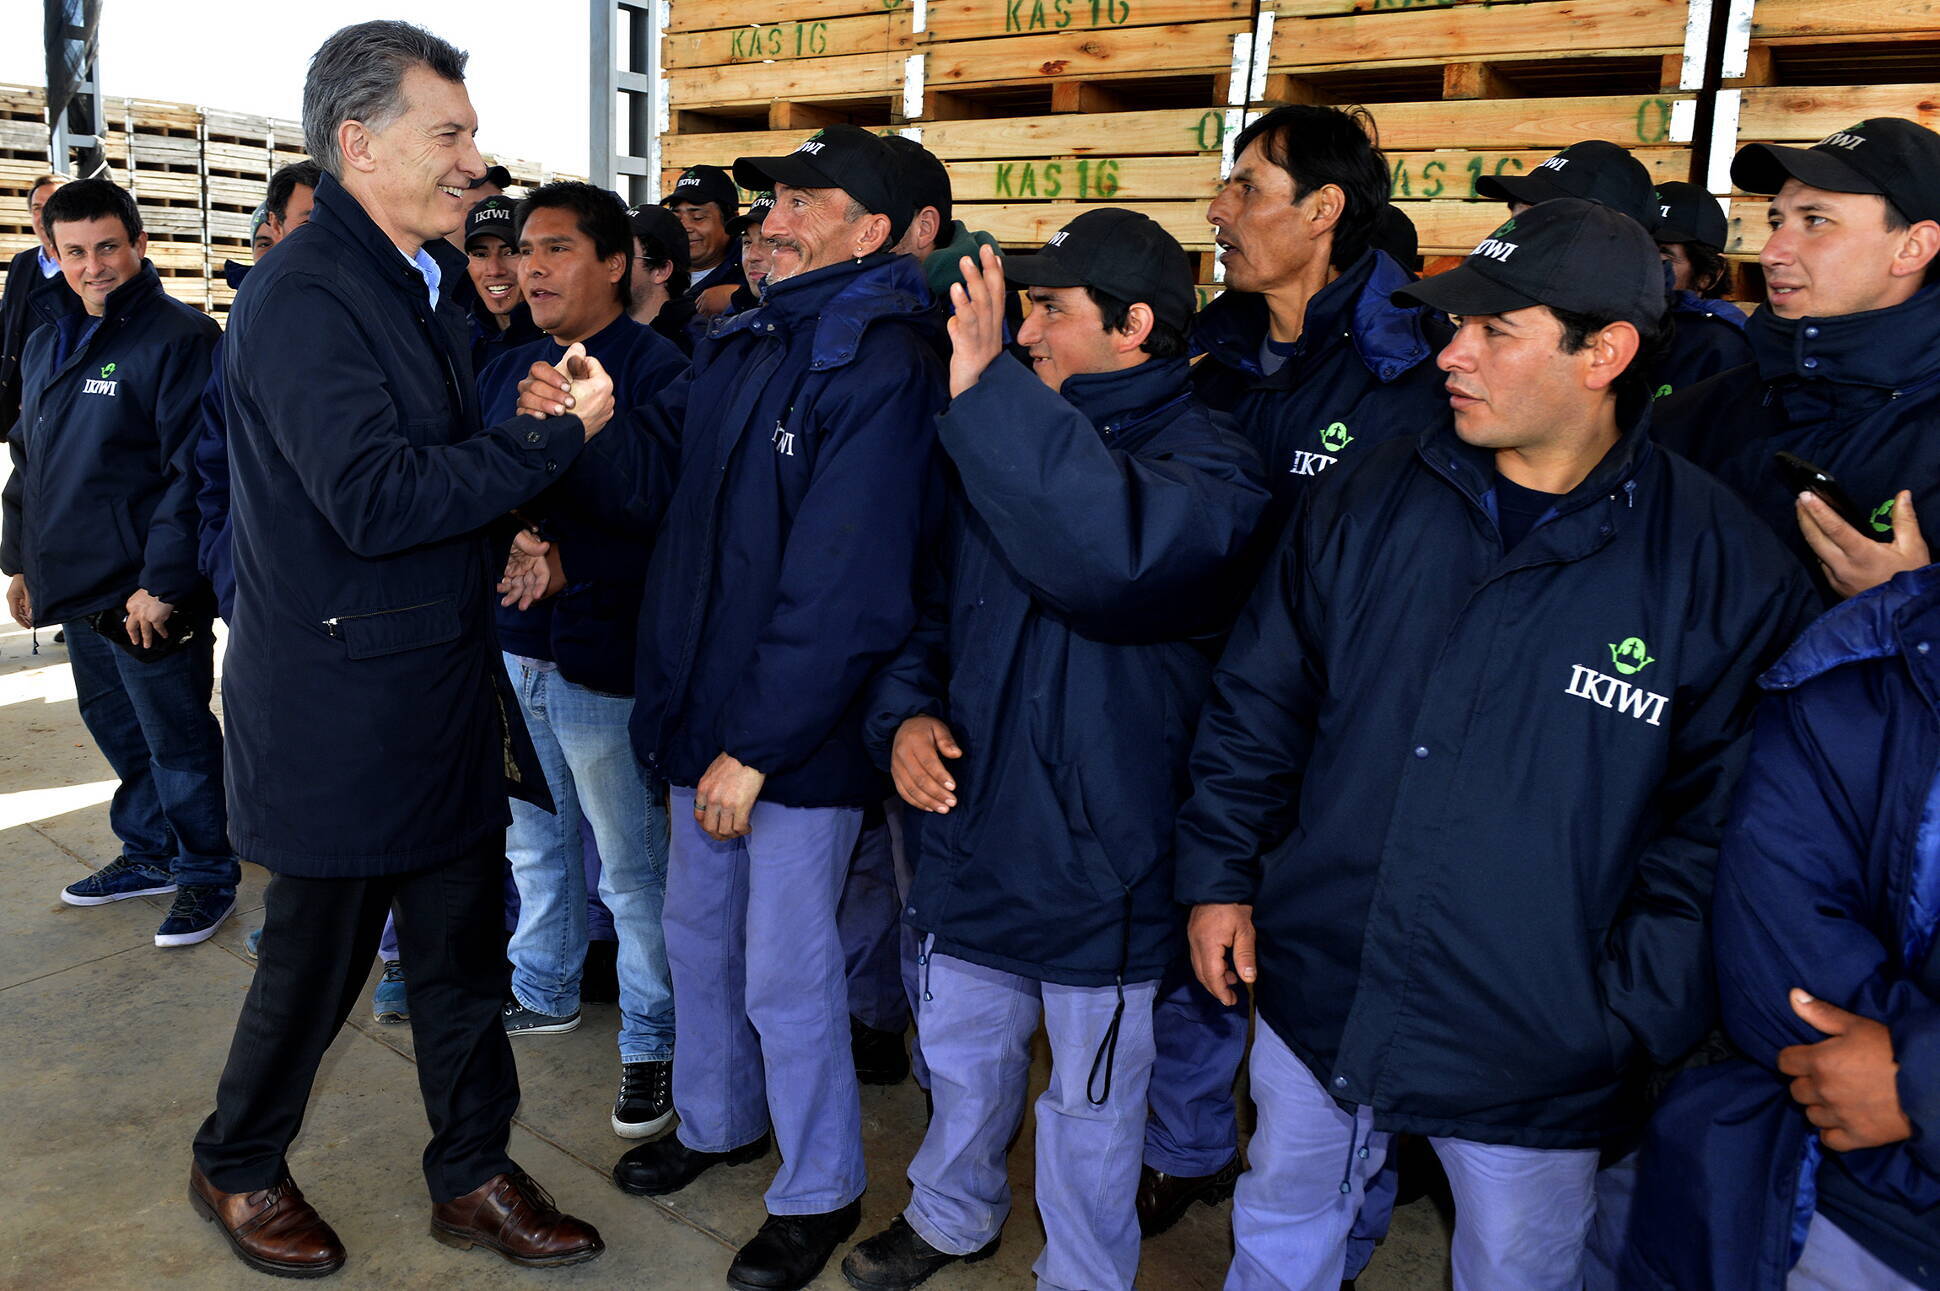 El presidente Macri: Los argentinos podemos agregar valor y generar empleo de calidad  